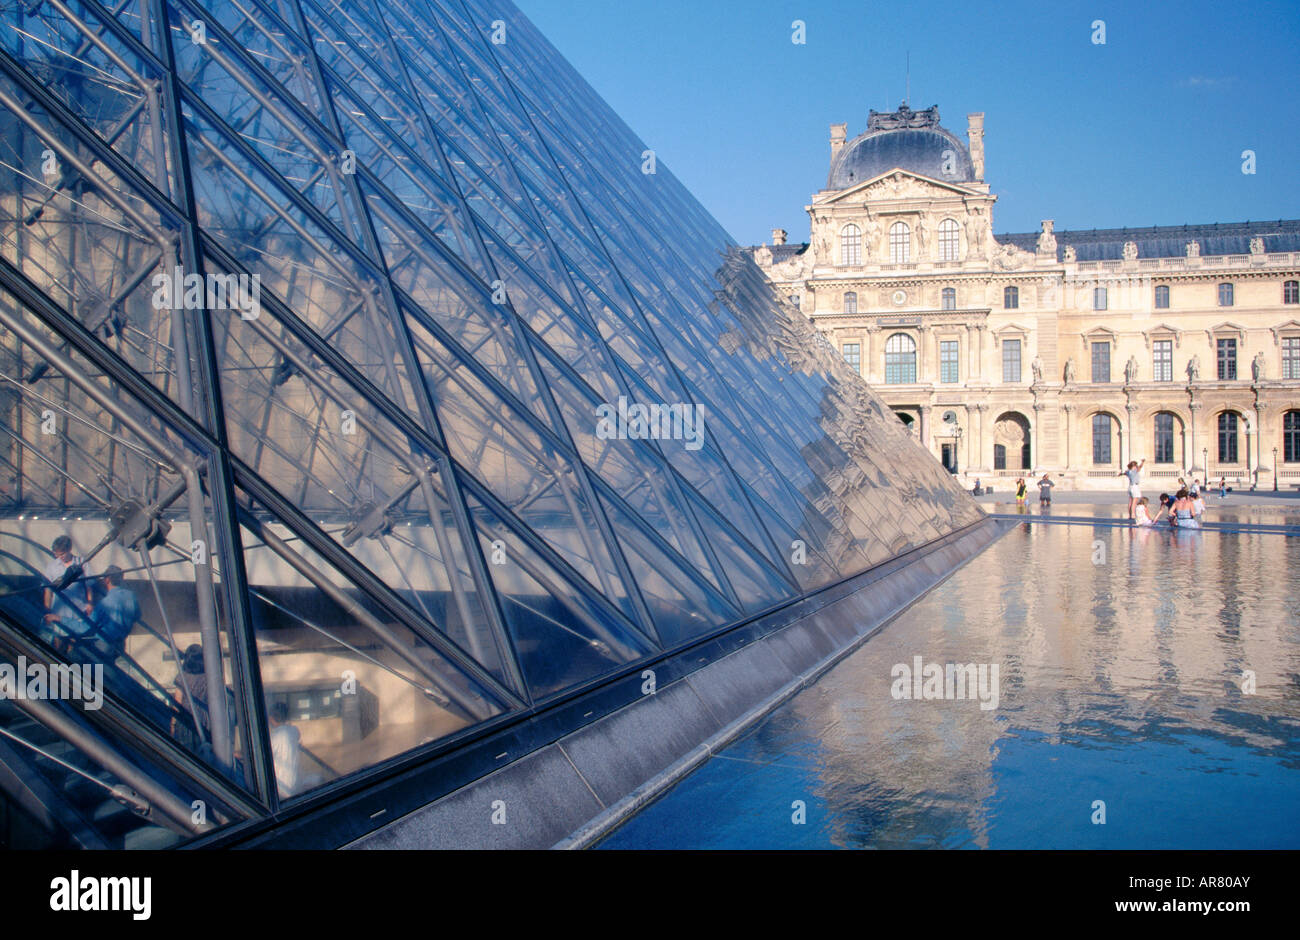 Fontaines et pyramide du Louvre à Paris France Banque D'Images